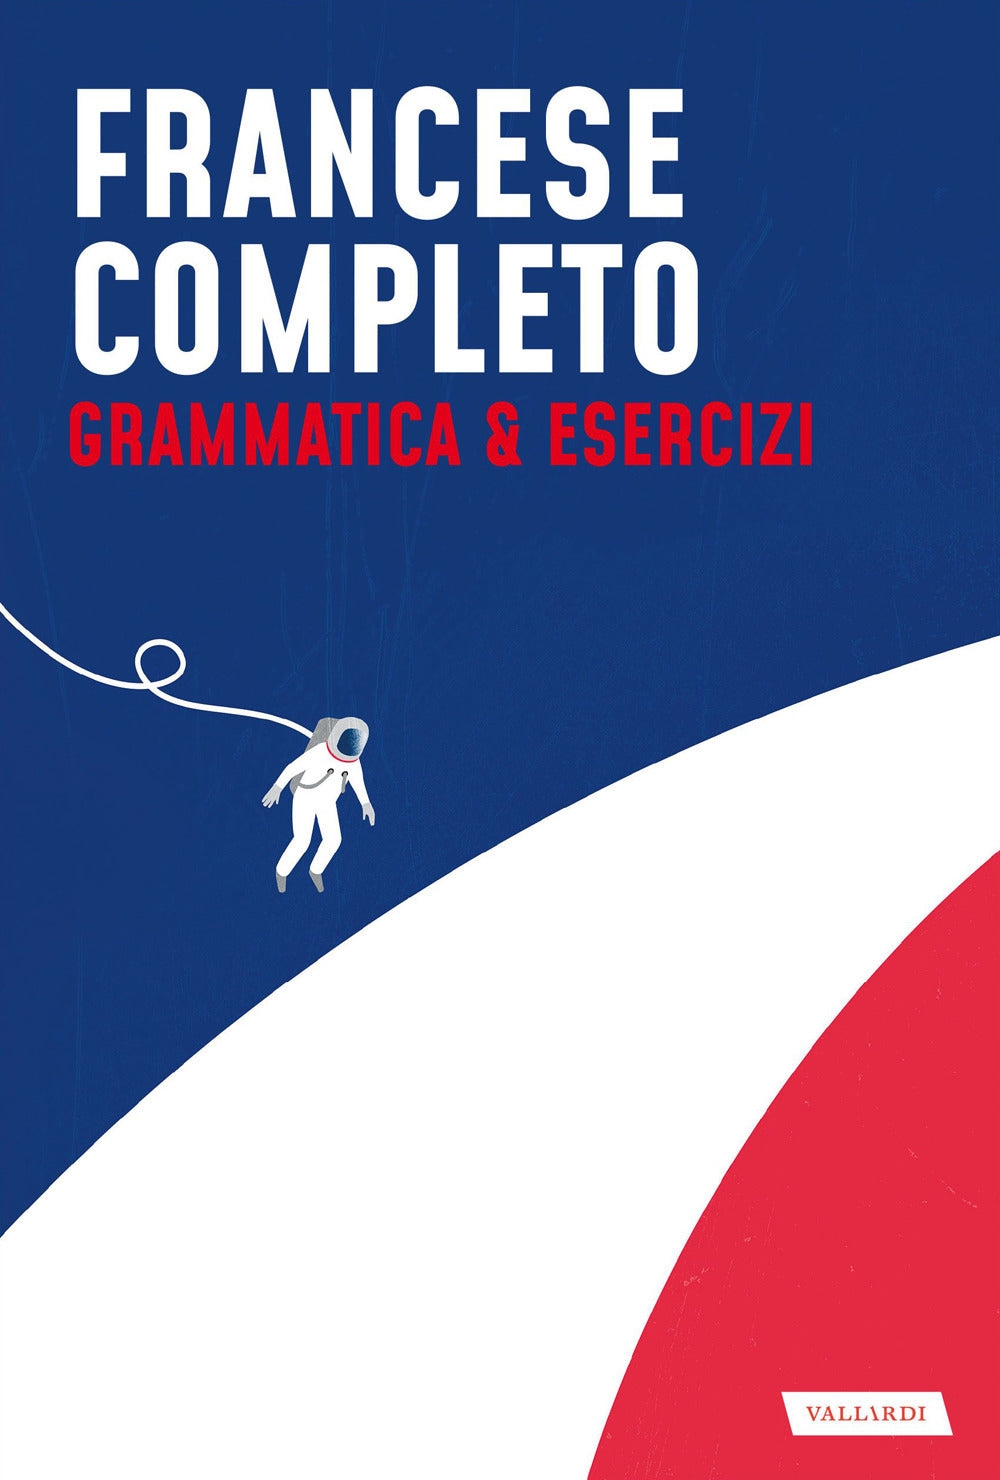 Francese completo. Grammatica & Esercizi